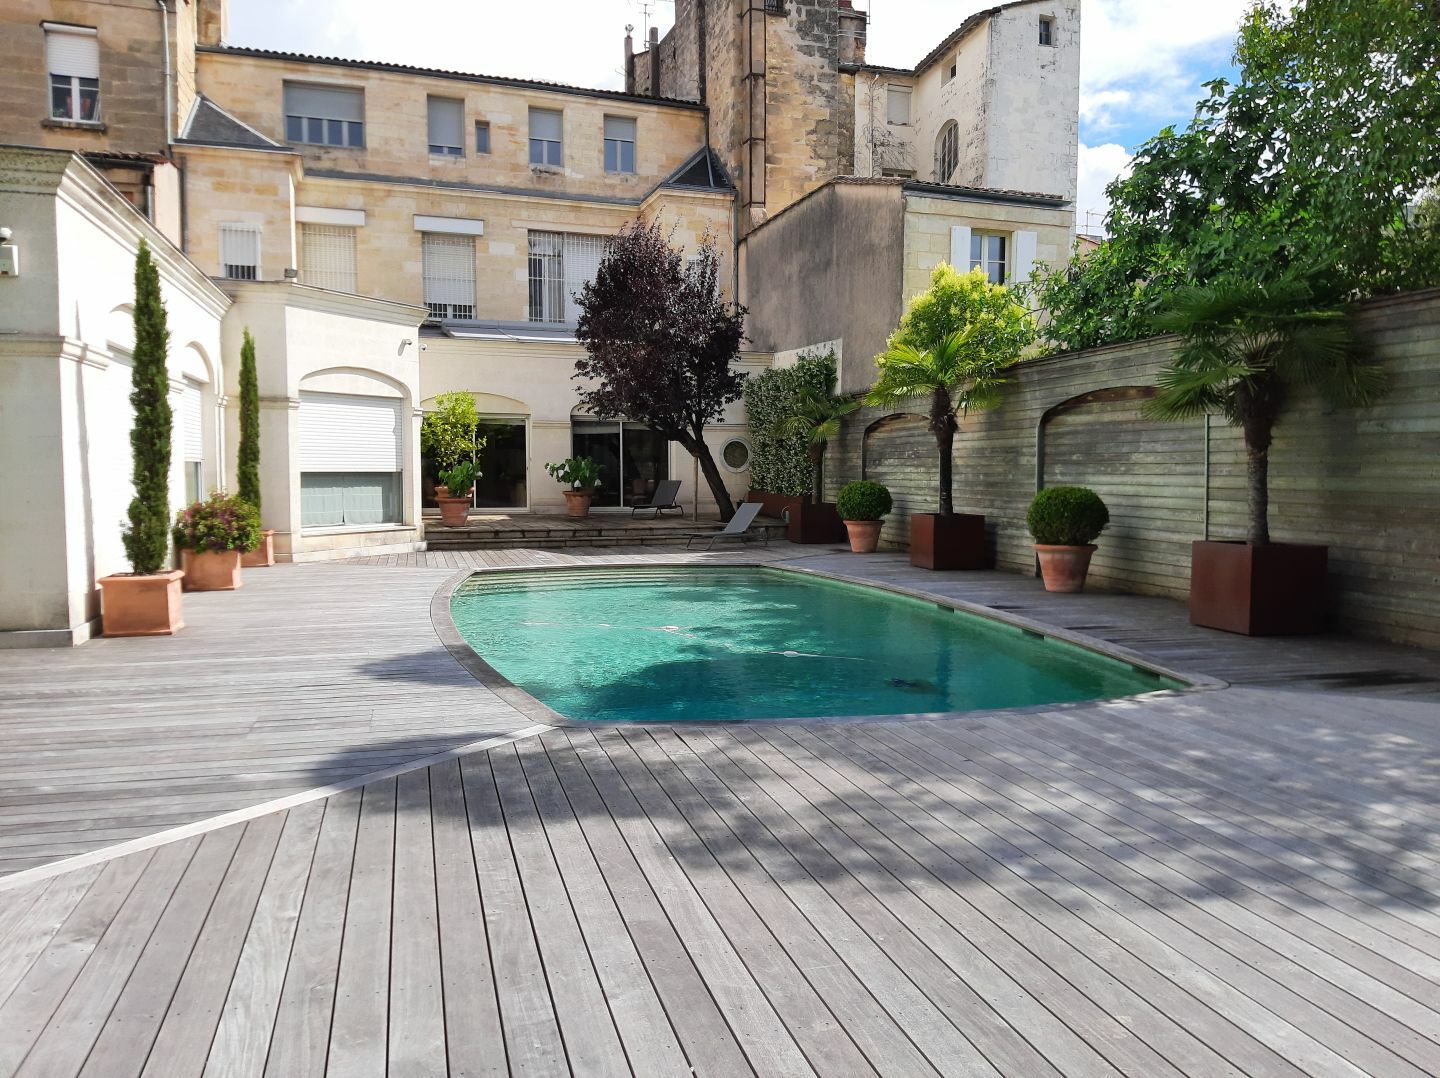 Photo d'un jardin aménagé à Bordeaux avec la réalisation d'une terrasse en bois autour de la piscine. On peut également déceler diverses plantations en pot. 